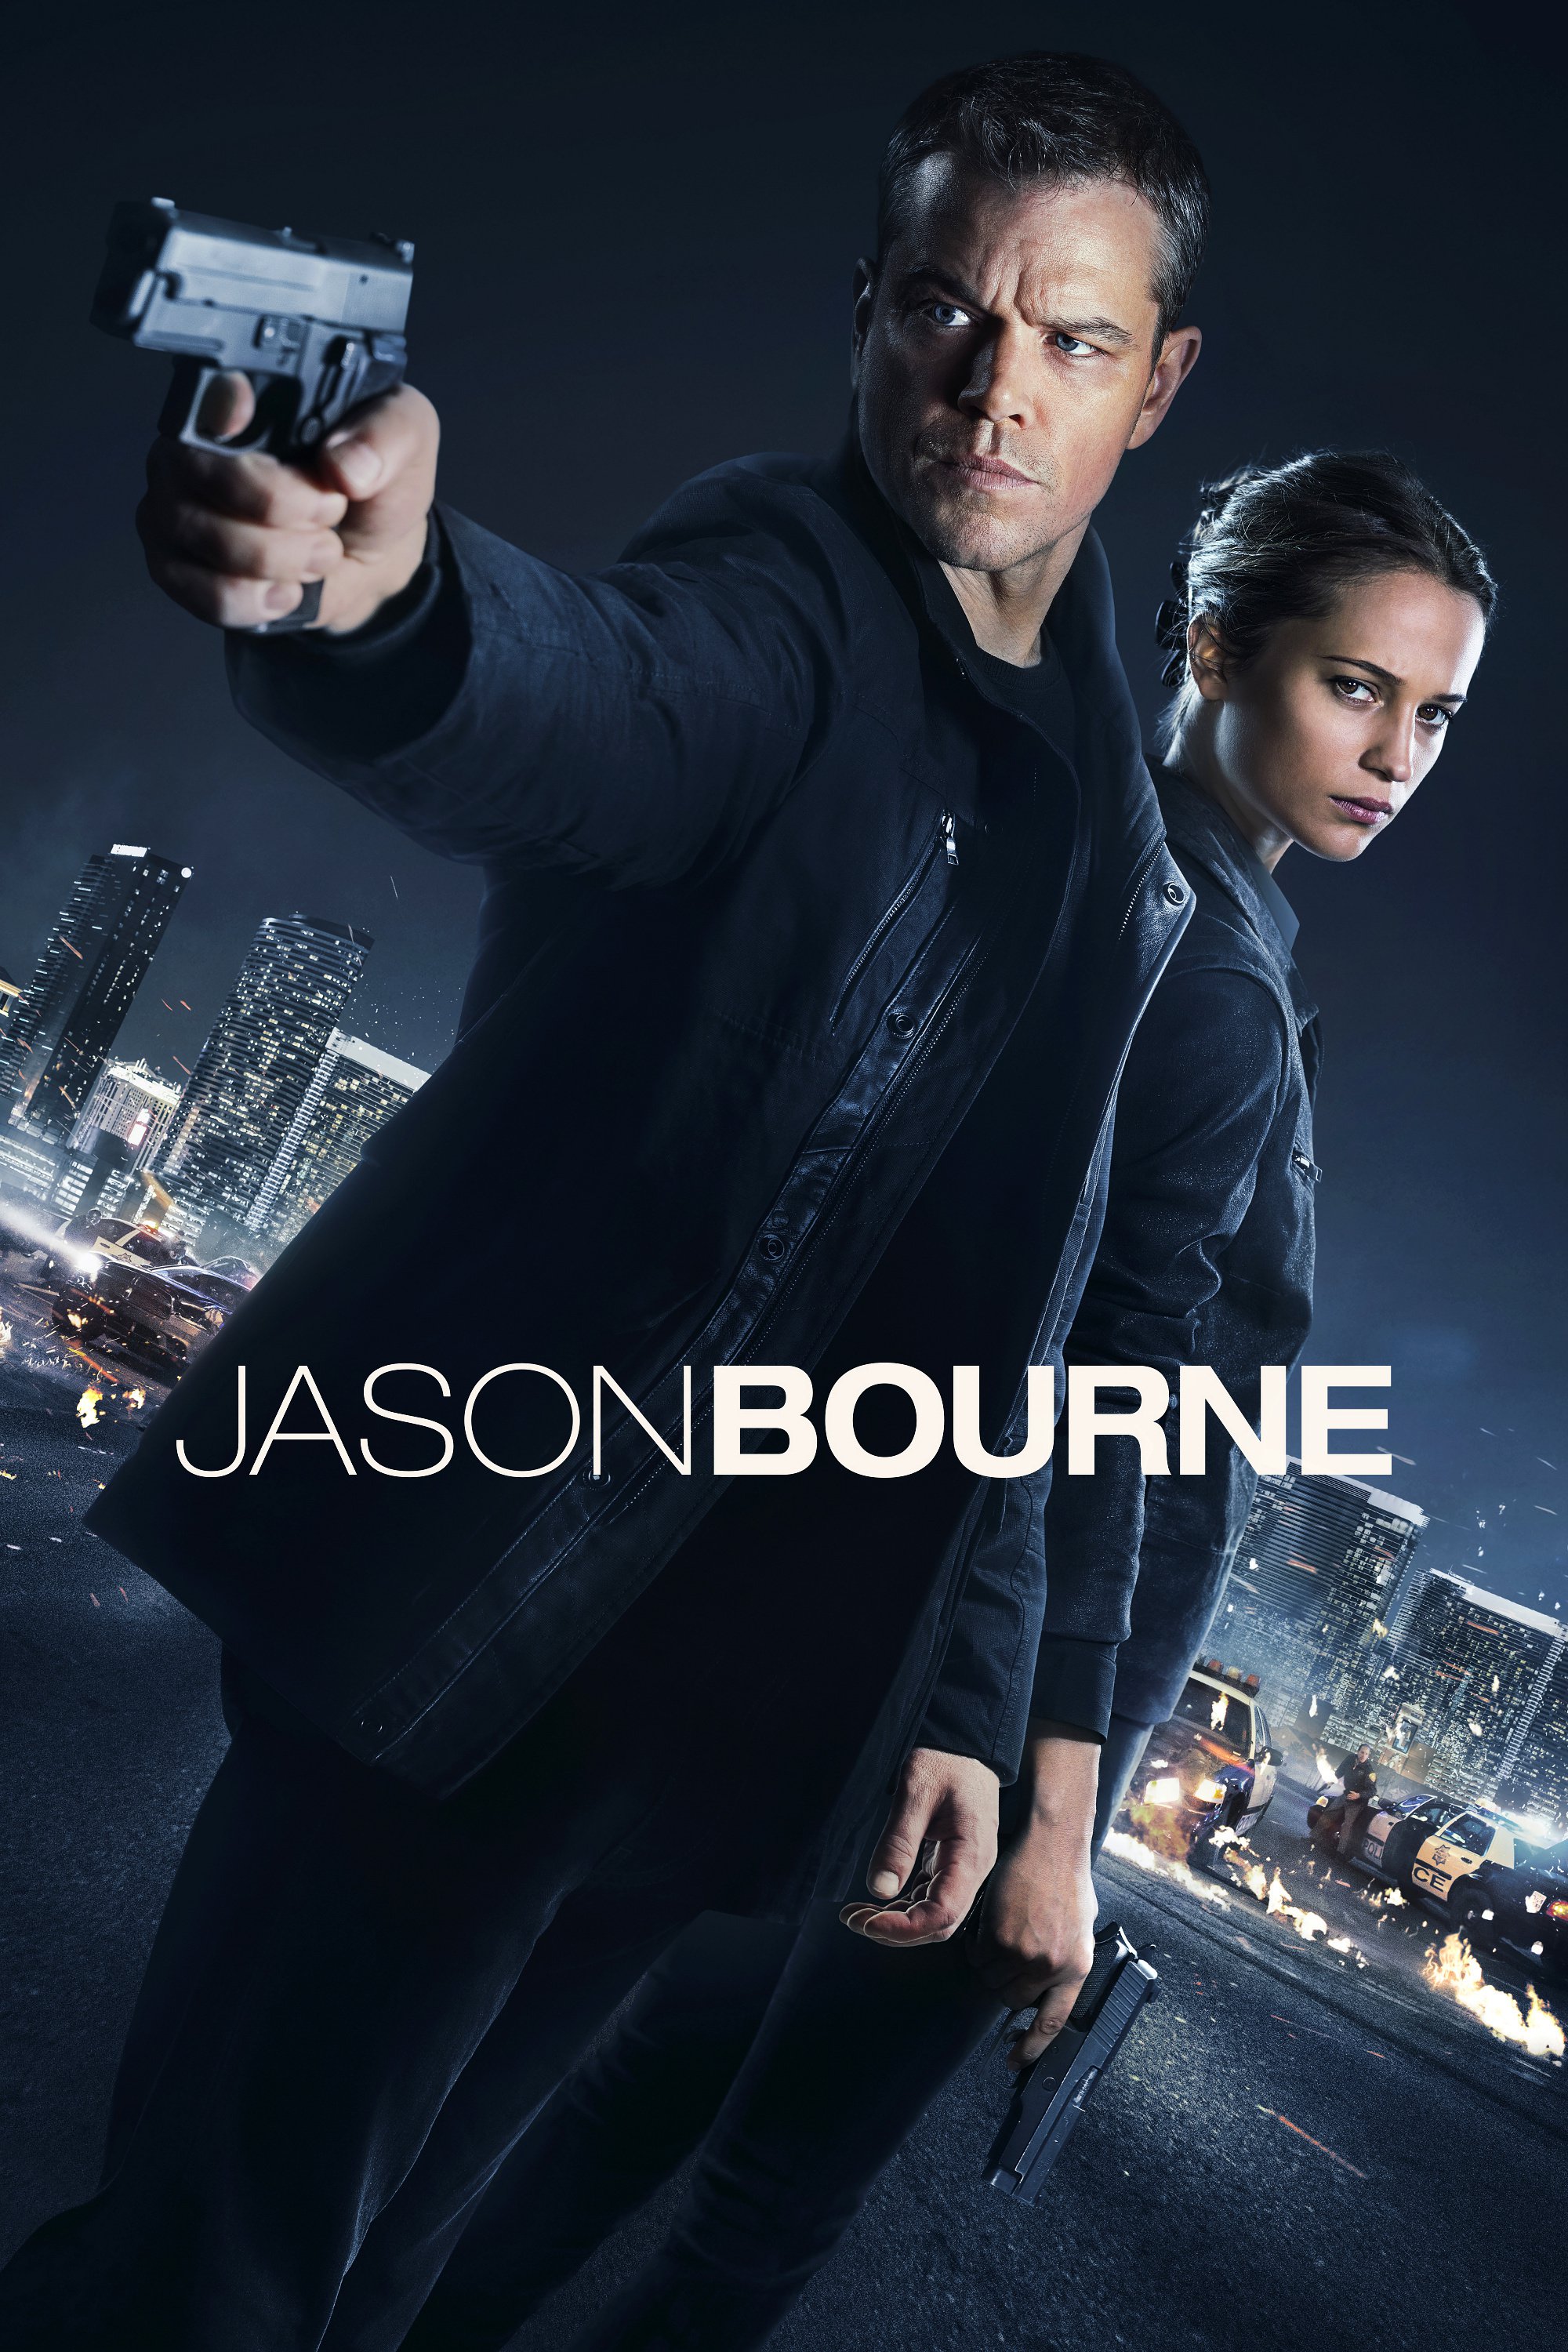 Plakat von "Jason Bourne"